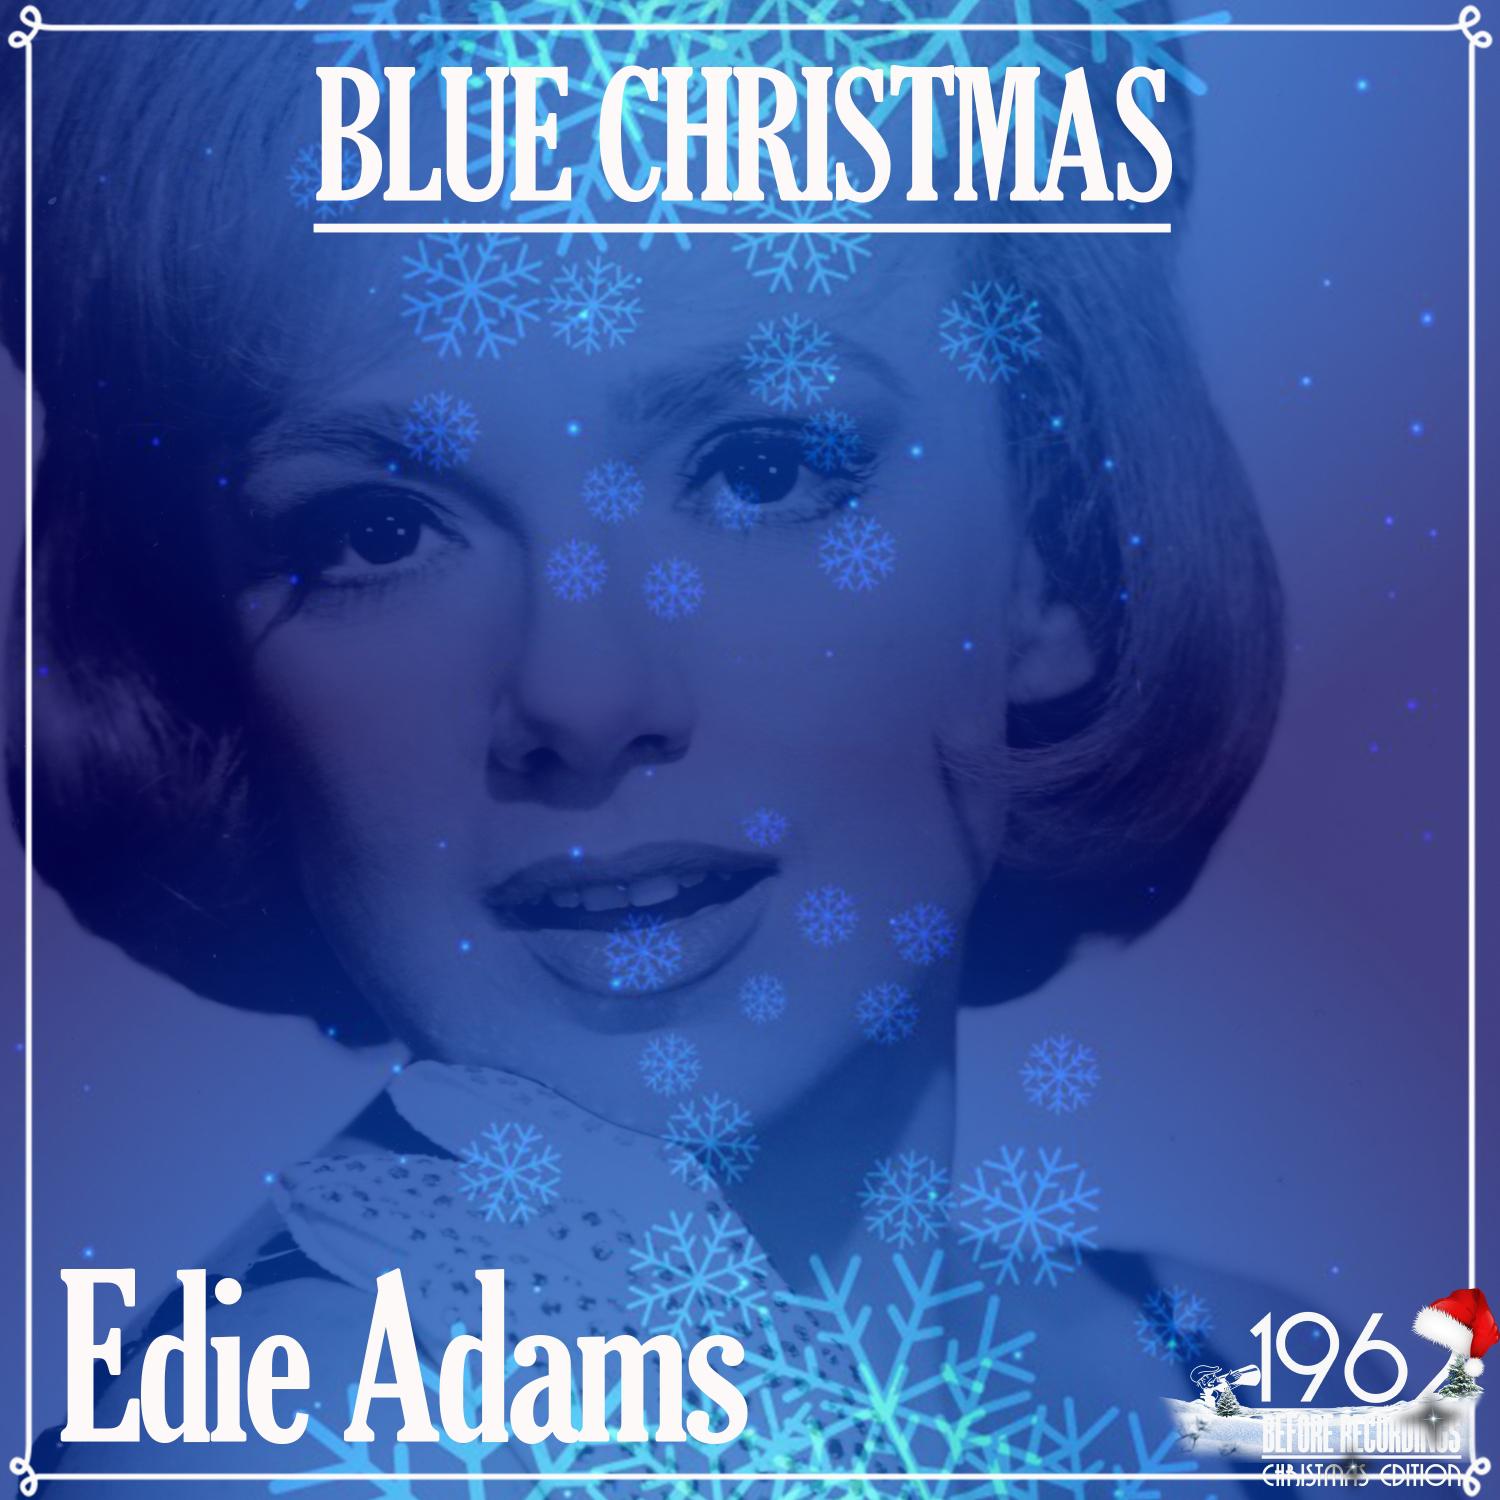 Edie Adams - Let It Snow! Let It Snow! Let It Snow!